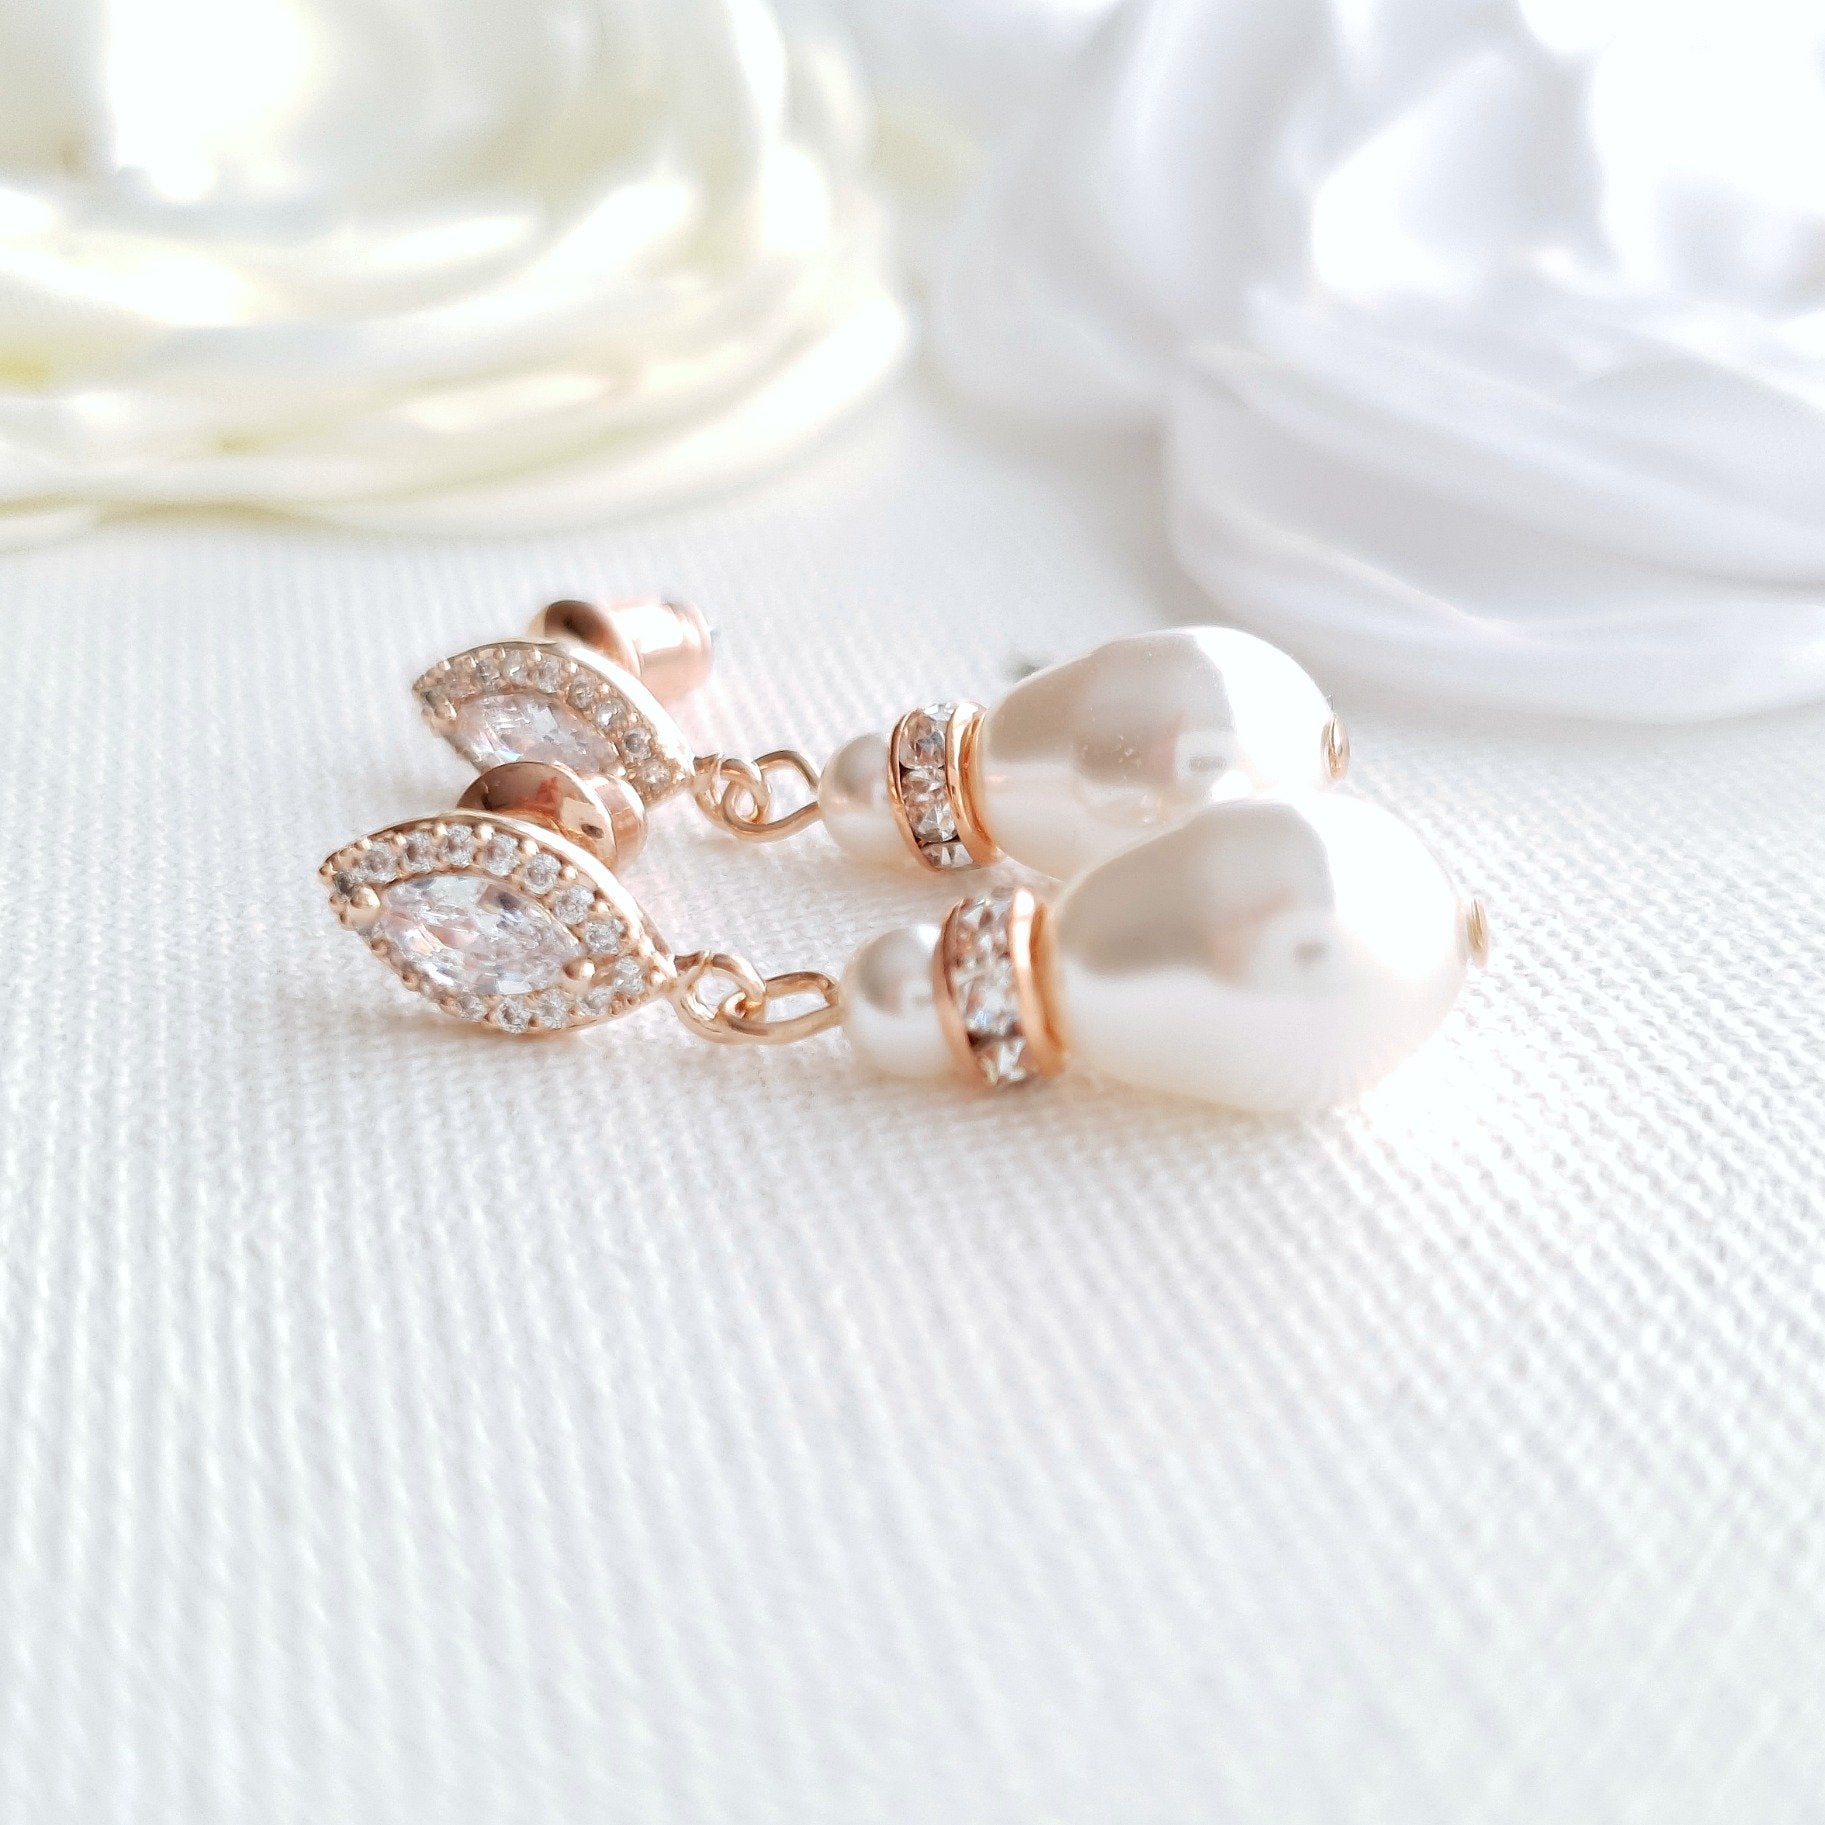 Bridal Teardrop Pearl Earrings Silver